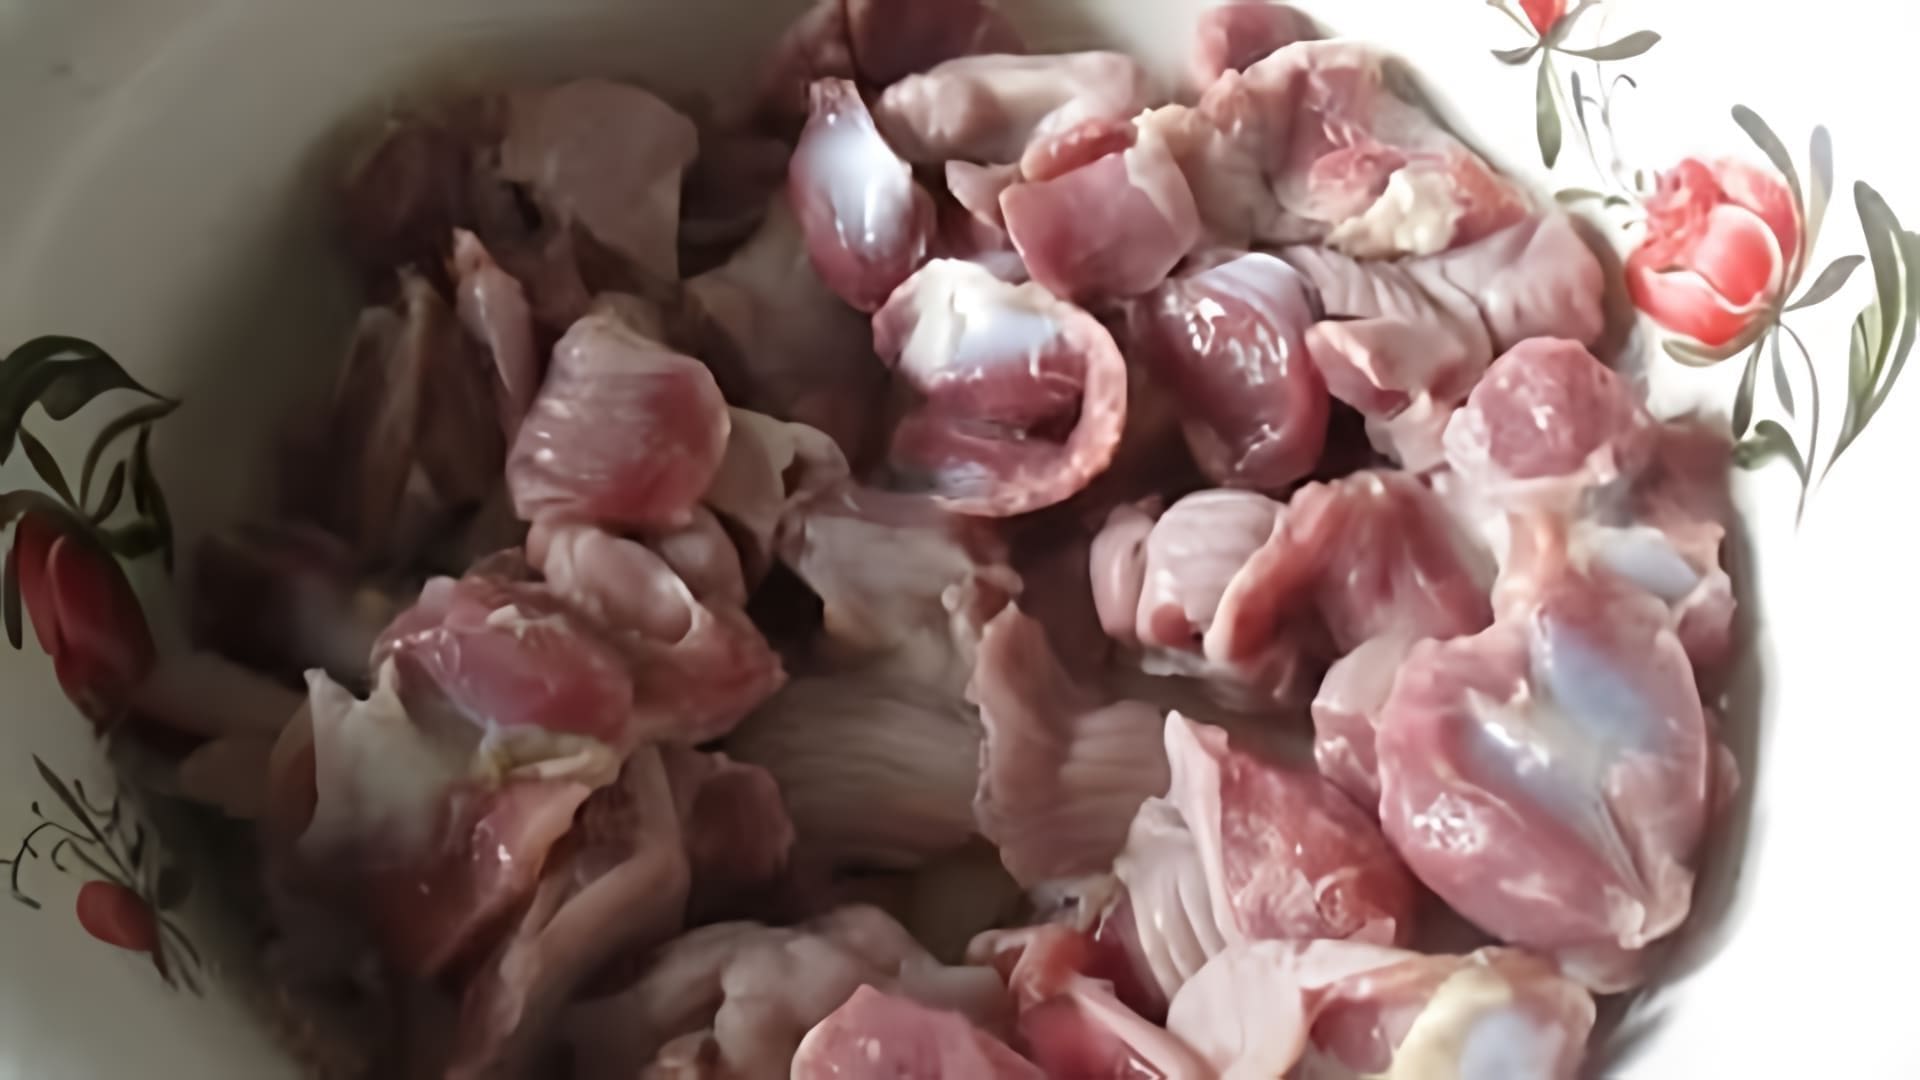 В данном видеоролике рассказывается о том, как правильно готовить куриные желудки, чтобы они получились вкусными